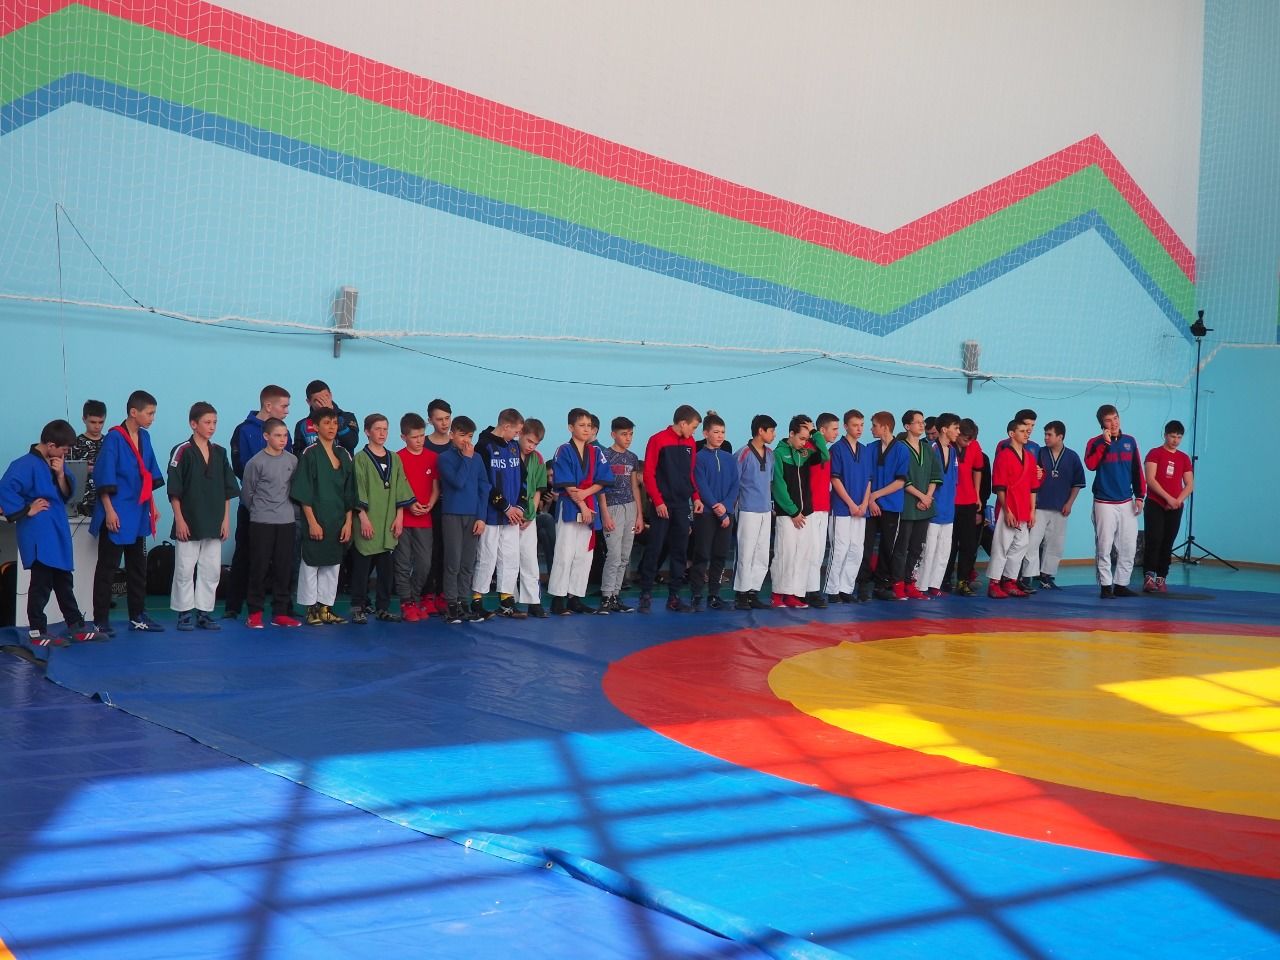 В Нурлате завершился республиканский турнир по борьбе на поясах памяти Габбаса Гиматдинова